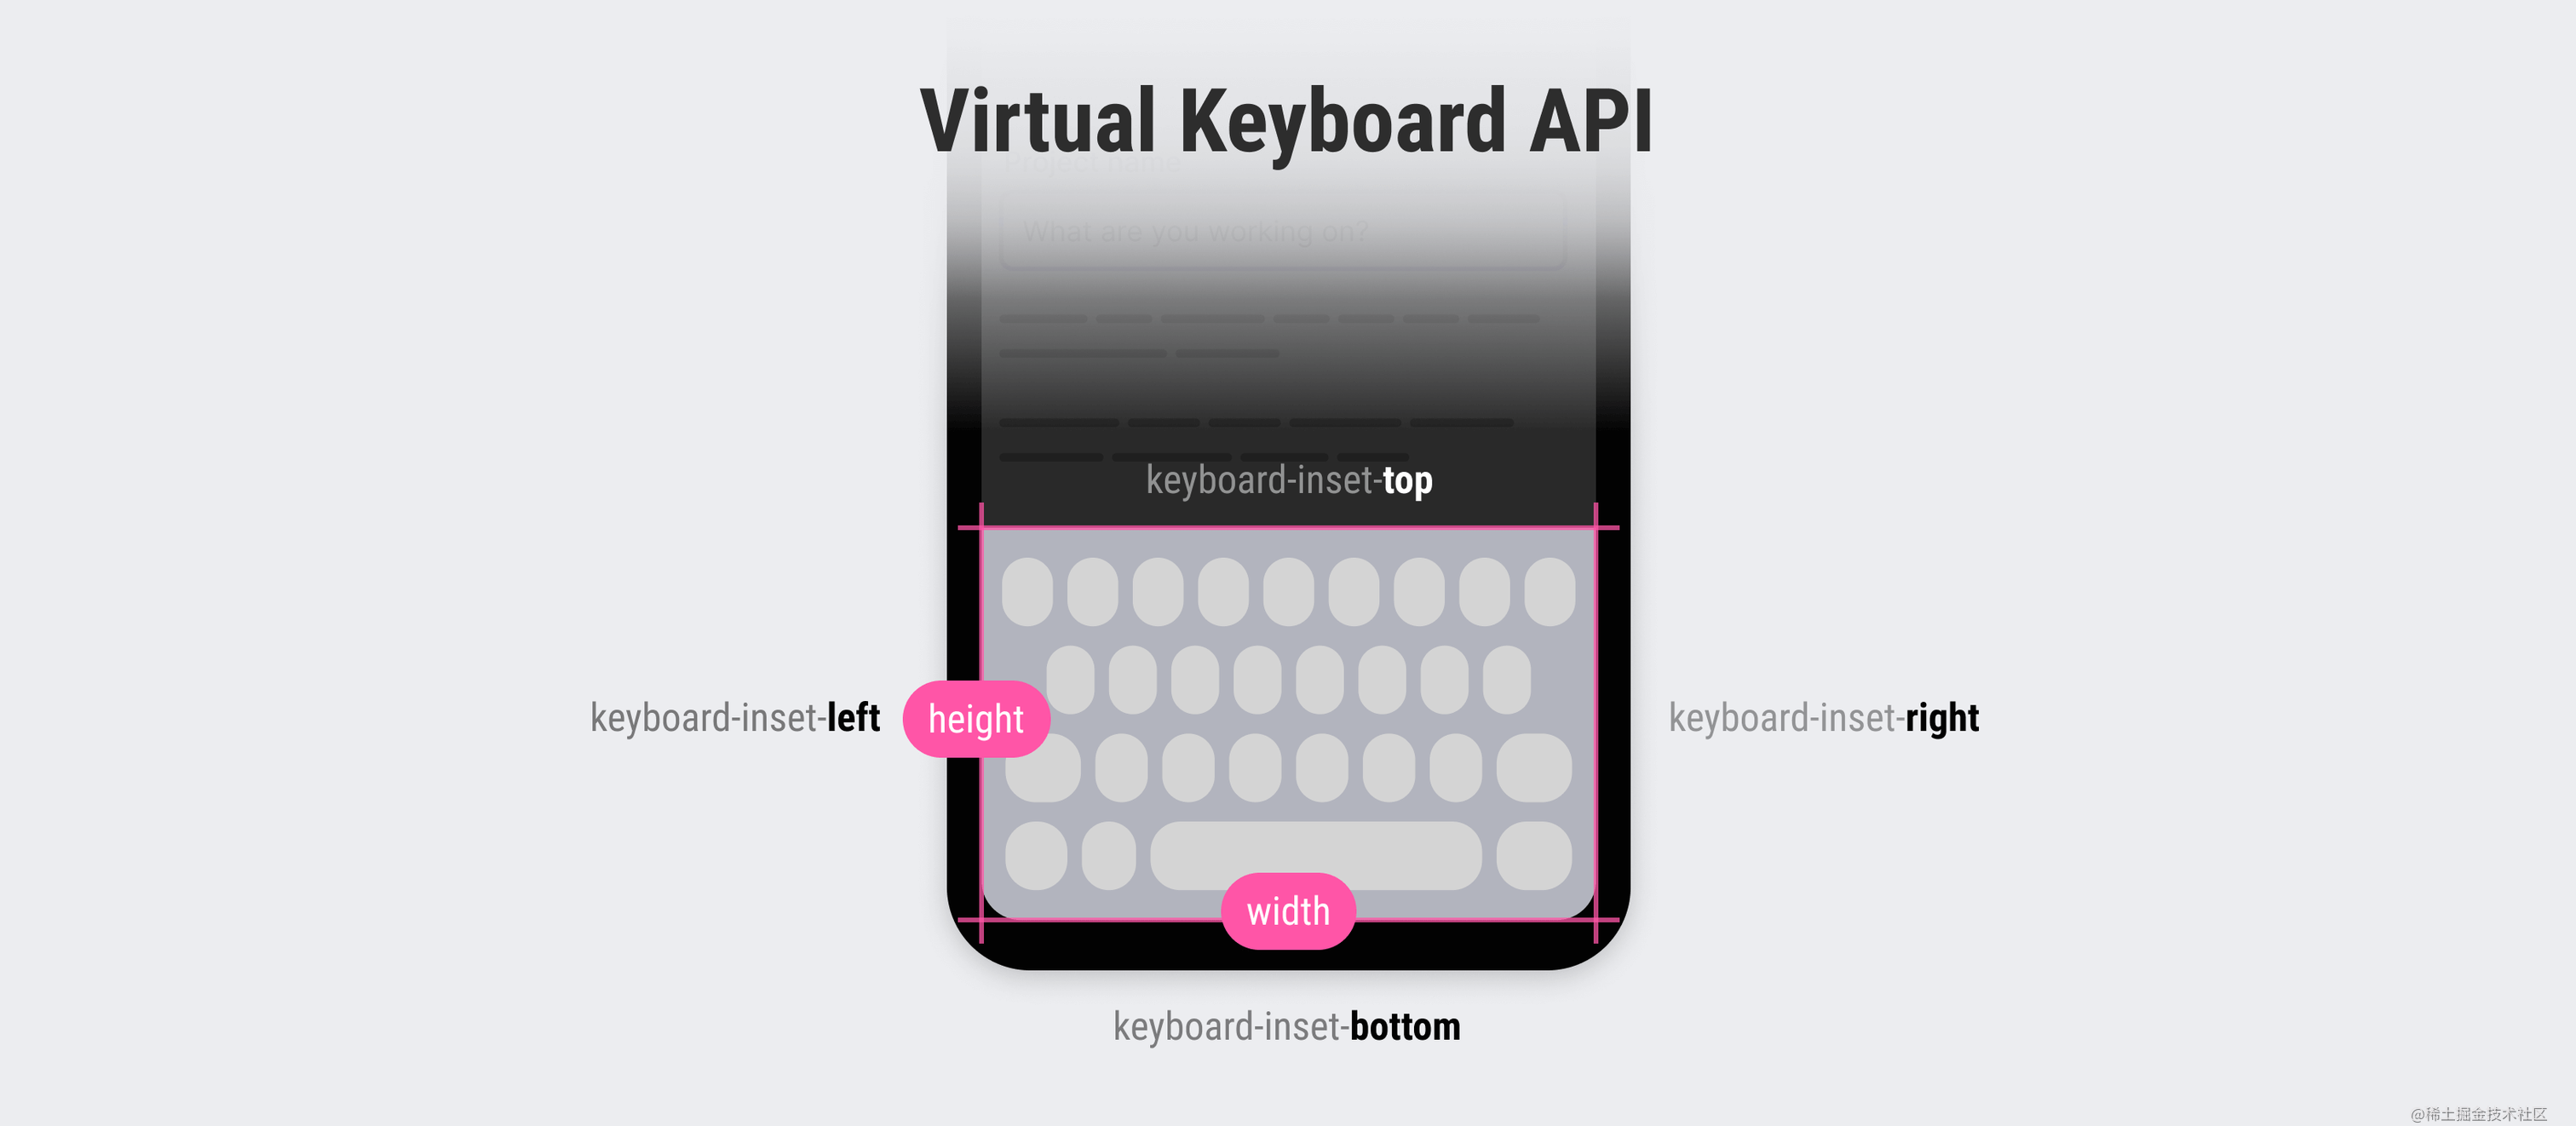 虚拟键盘 API 的妙用